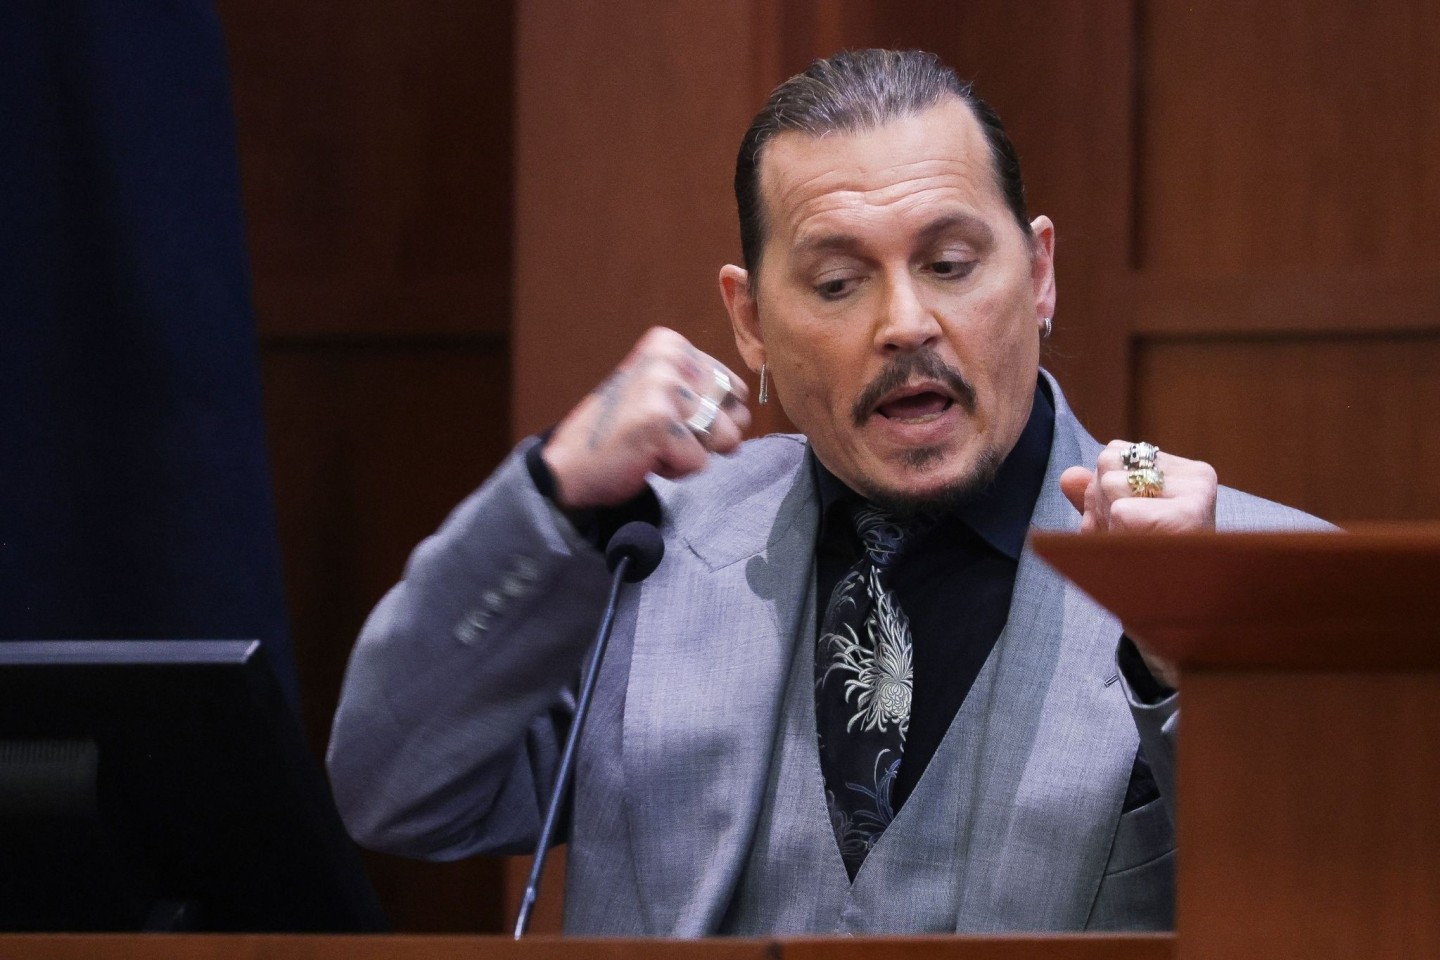 Johnny Depp demonstriert während seiner Anhörung, wie seine Ex-Frau Heard ihn geschlagen haben soll.